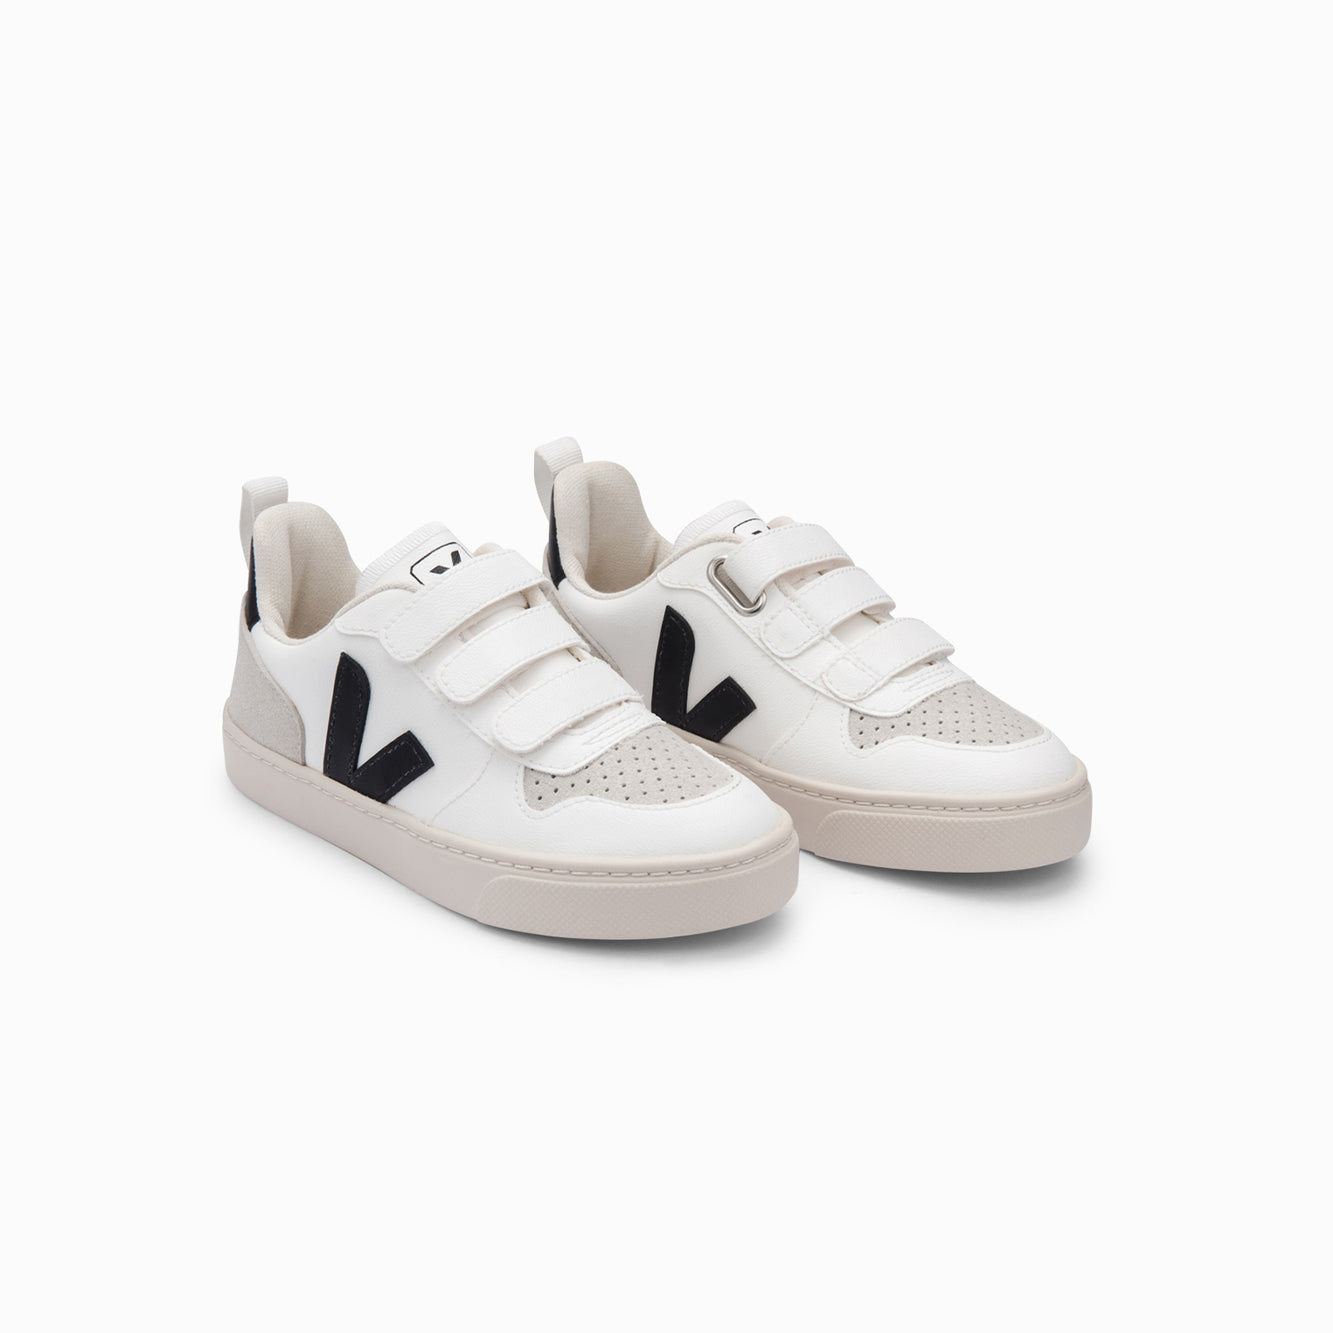 Boys & Girls White "V-10 CWL" Shoes